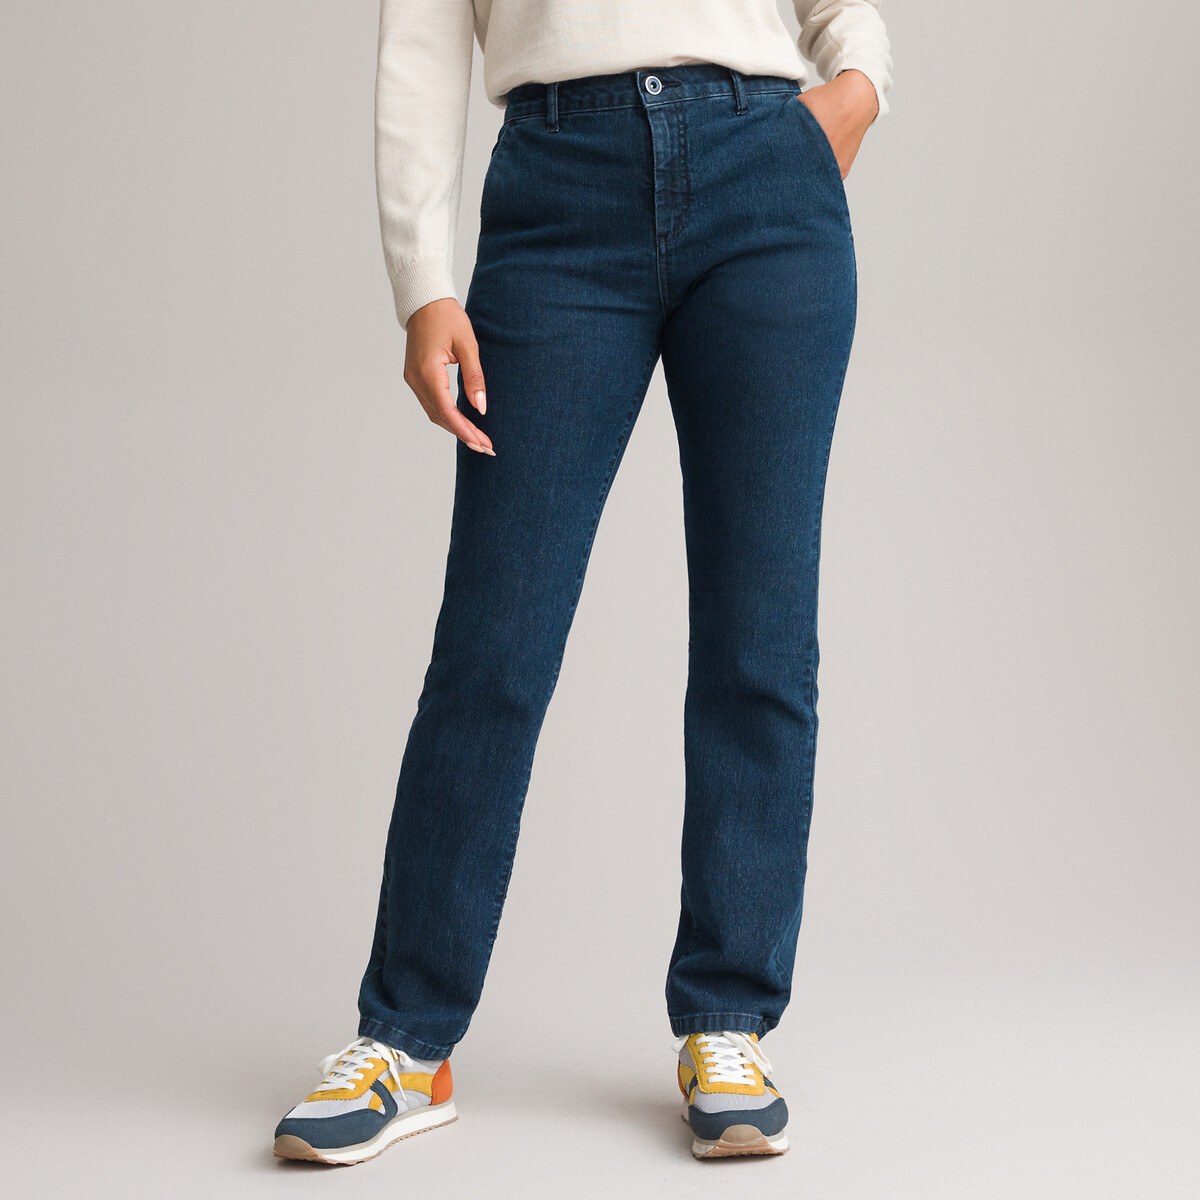 Straight stretch denim jeans, length 30.5 Anne Weyburn